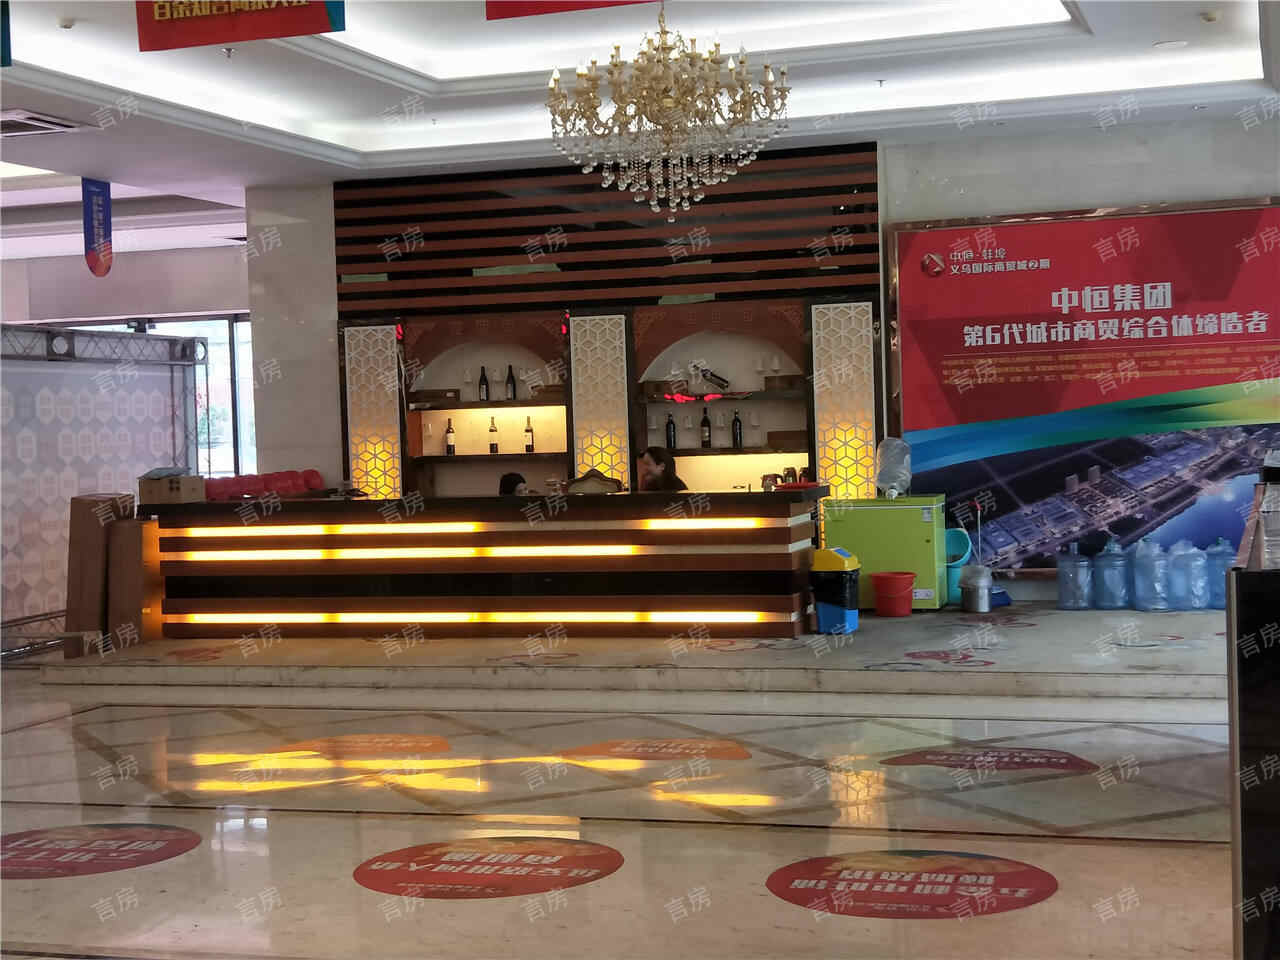 中恒蚌埠义乌国际商贸城商铺现场图片